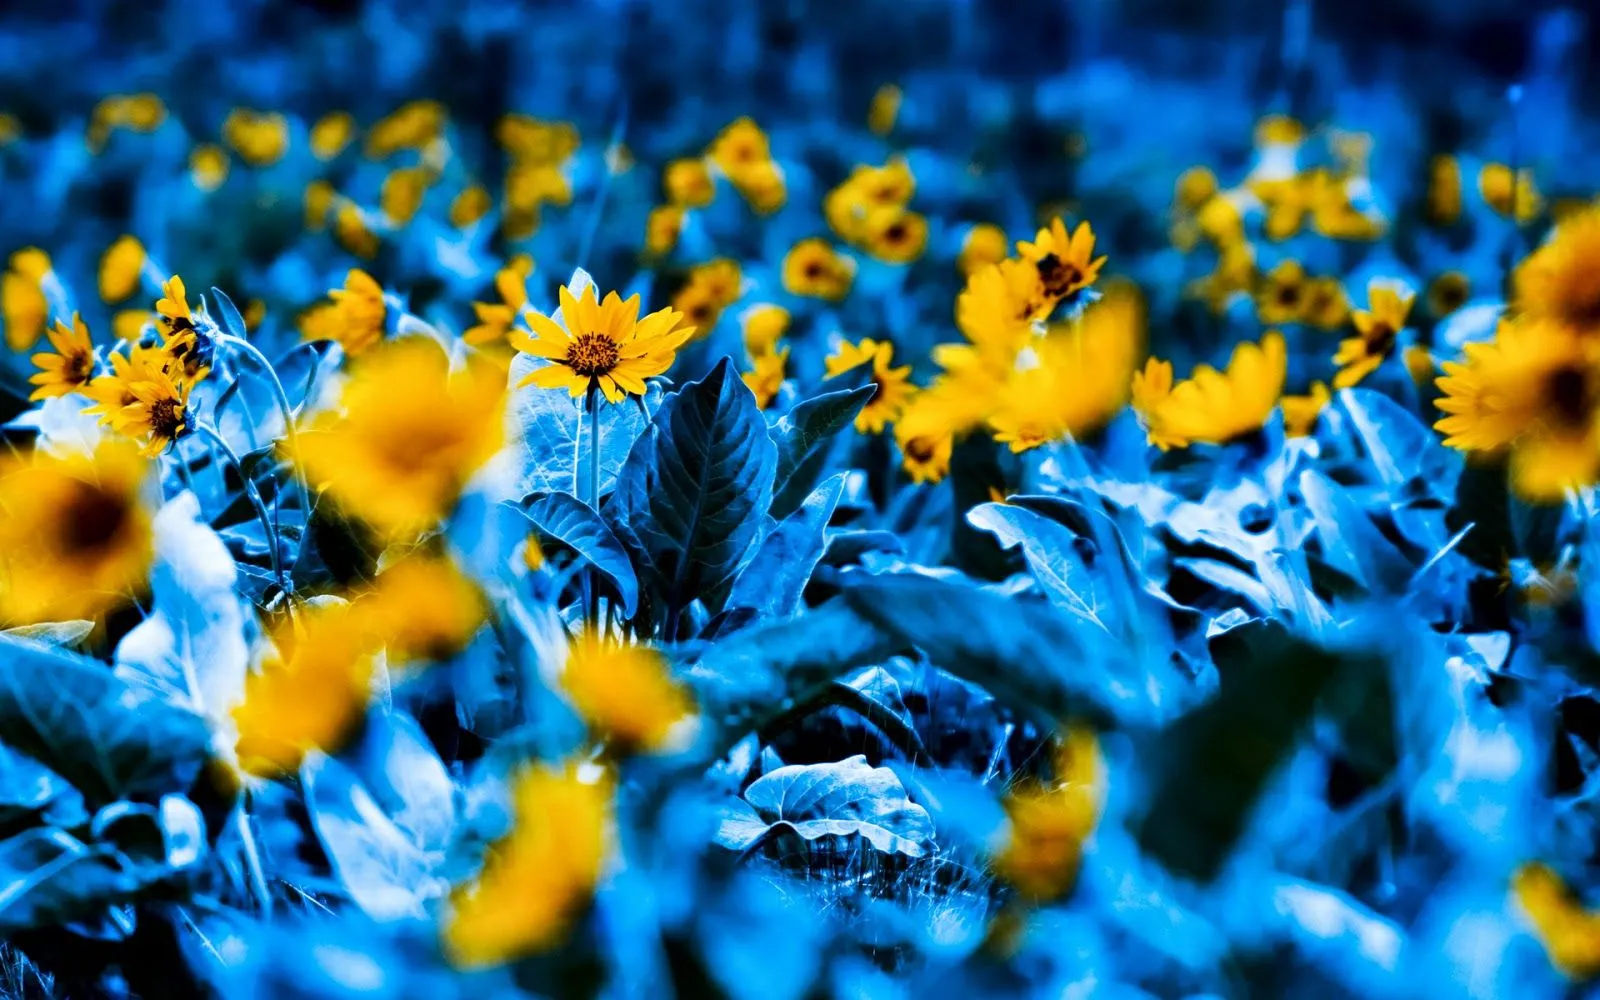 Fondos de escritorios gratis: Flores azules y amarillas